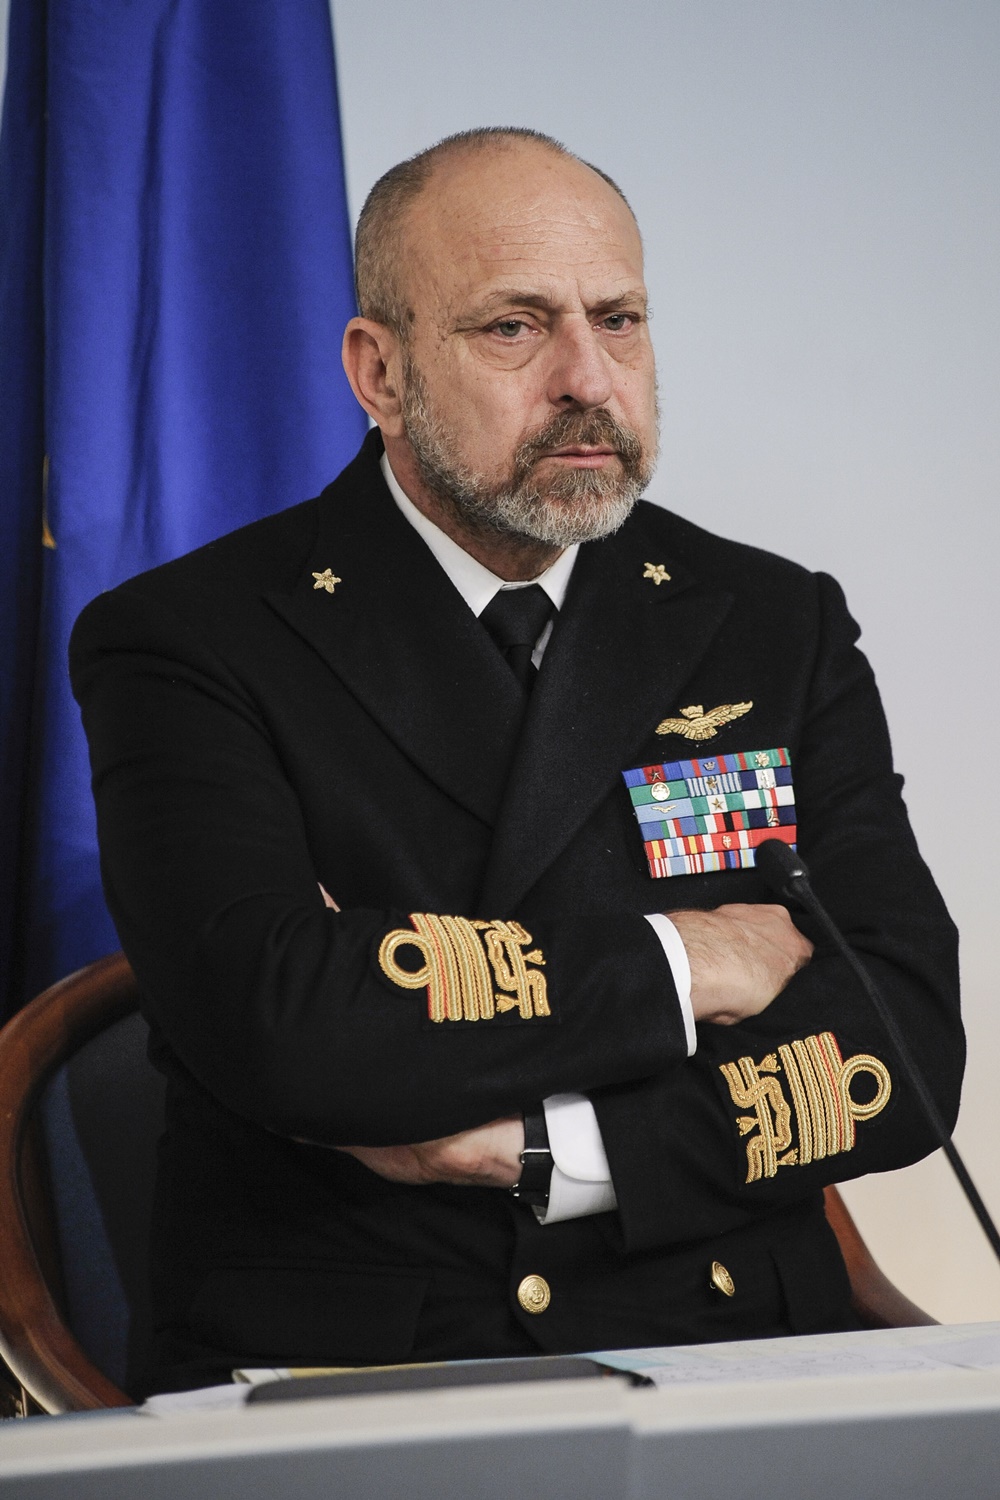 Conferenza stampa sul naufragio della Norman Atlantic 2014, Giuseppe De Giorgi